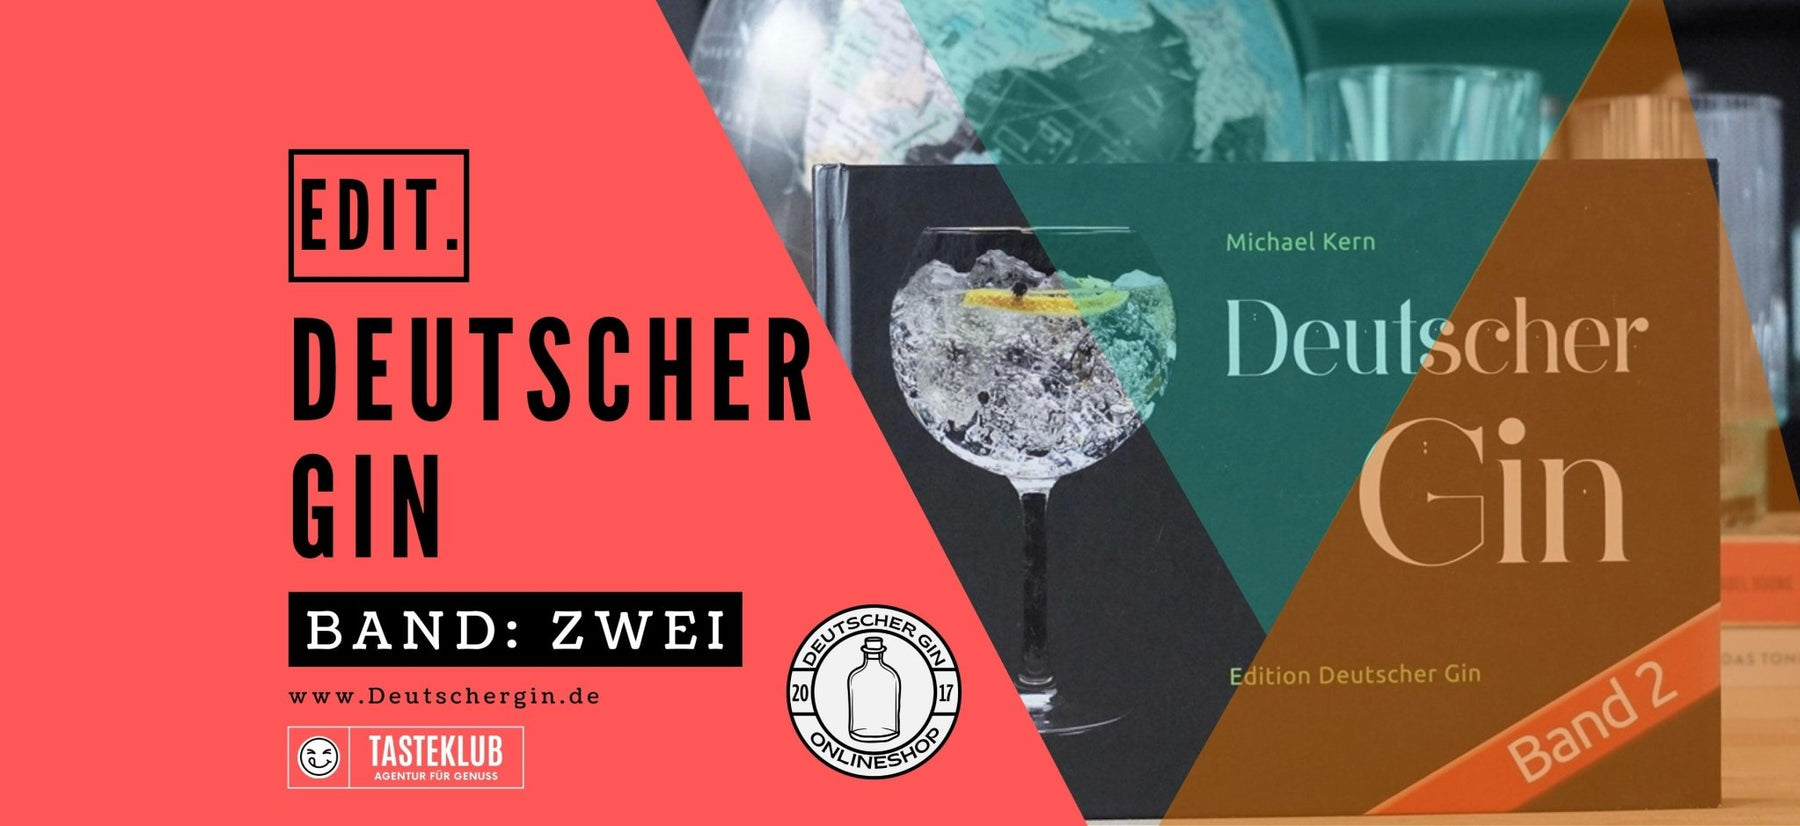 Blücher Gin - Deutschergin.de